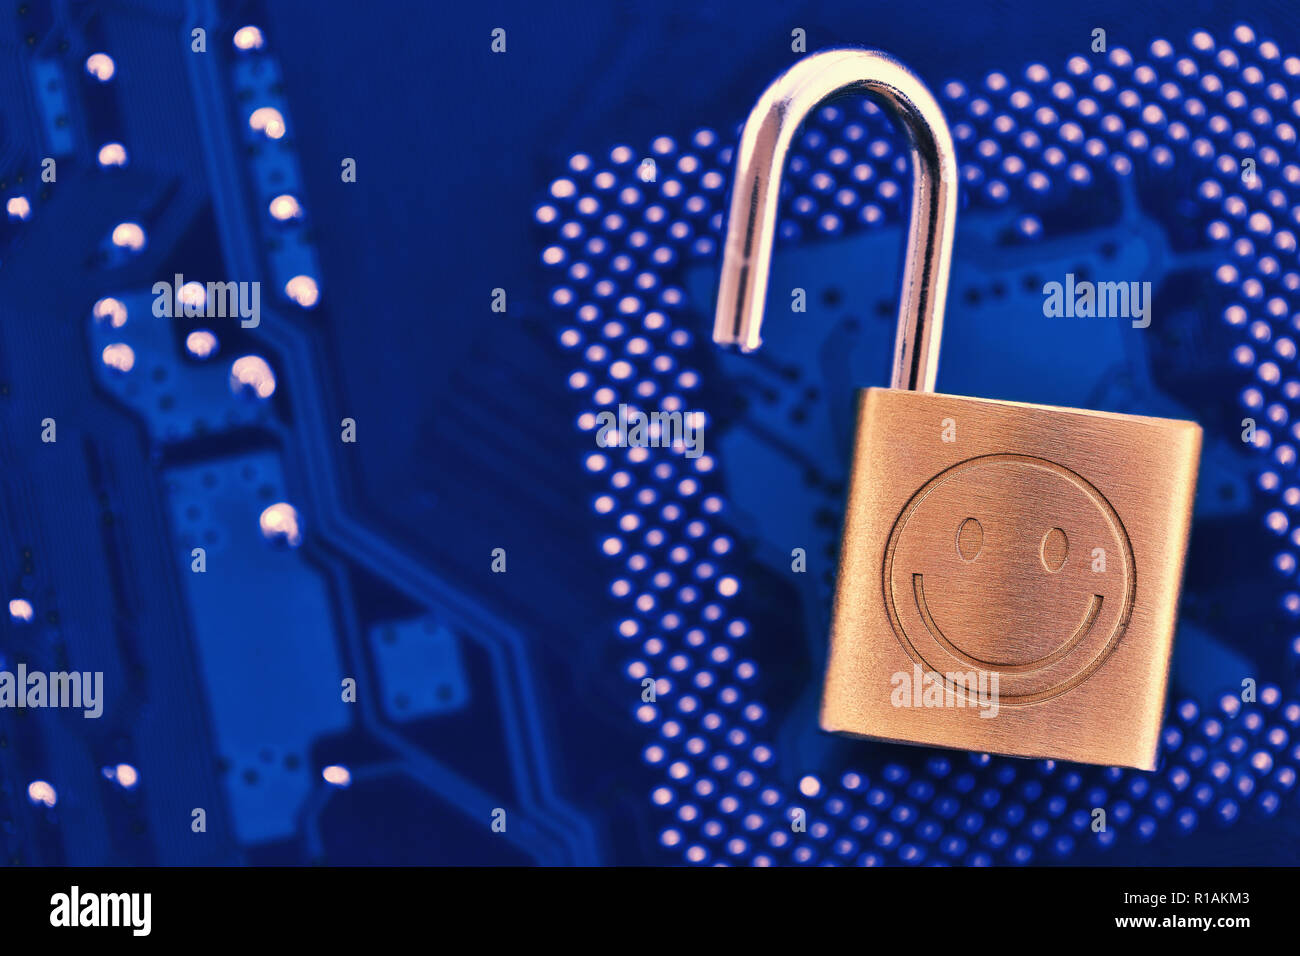 Digital Security Konzept: Lock auf dem Computer chip Hintergrund mit Kopie Raum zu öffnen Stockfoto